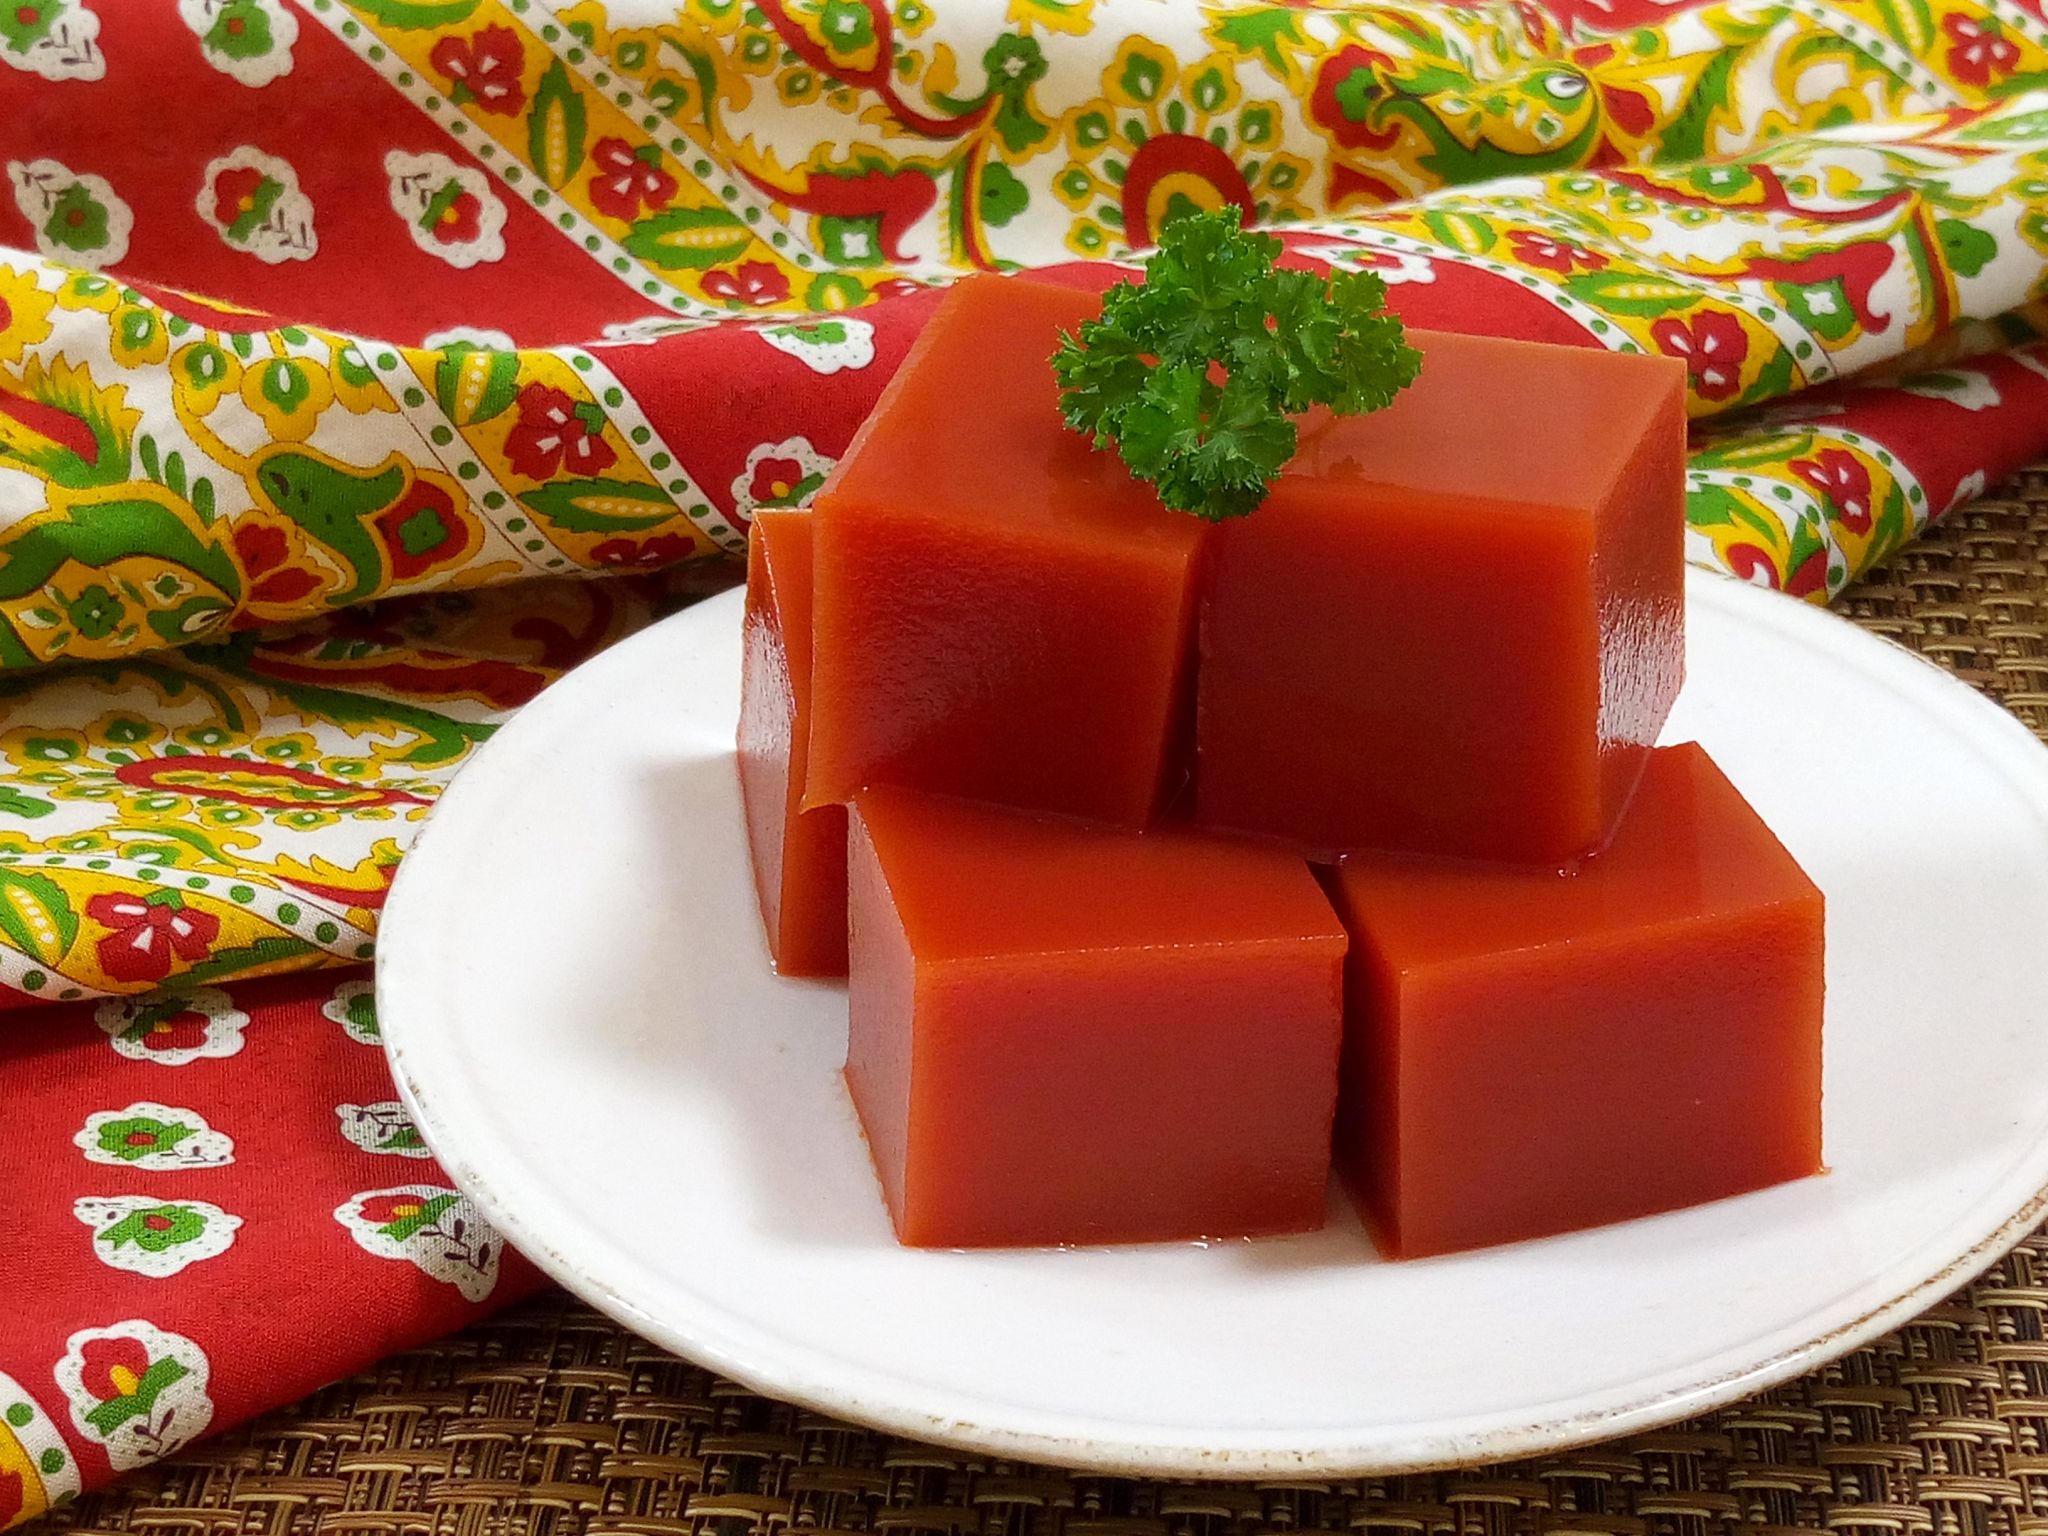 トマト寒天のレシピ ダイエット 美肌効果があります やまでら くみこ のレシピ